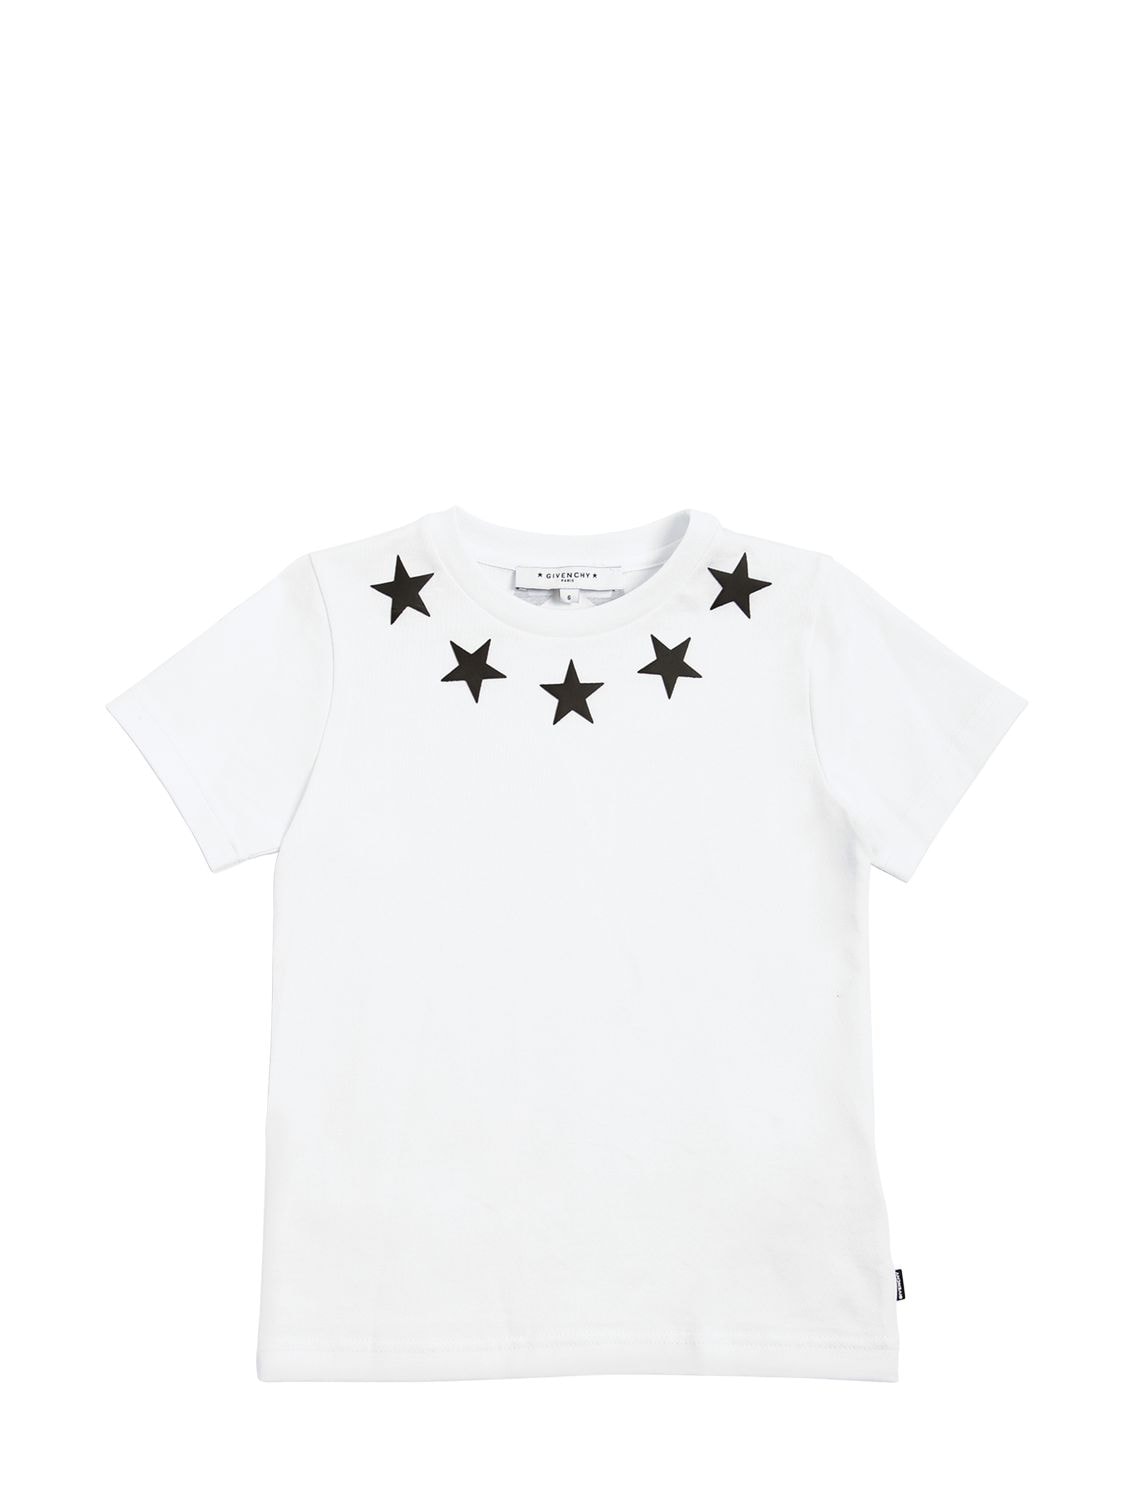 shirt with stars around collar